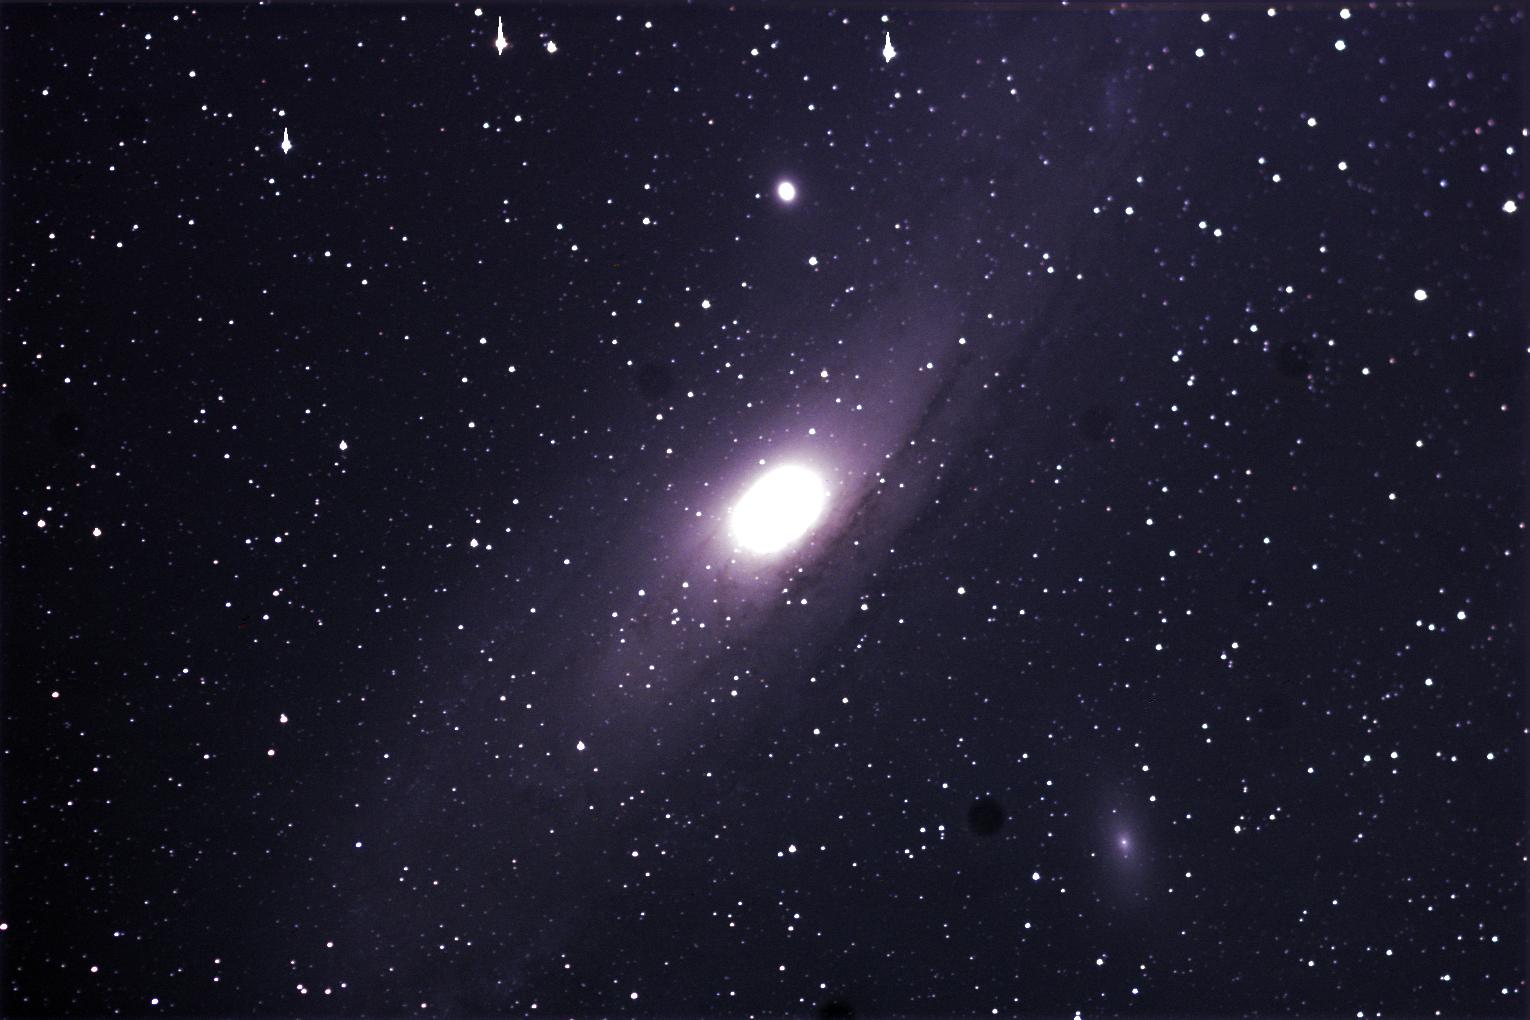 M31 (Andromeda galaxy)